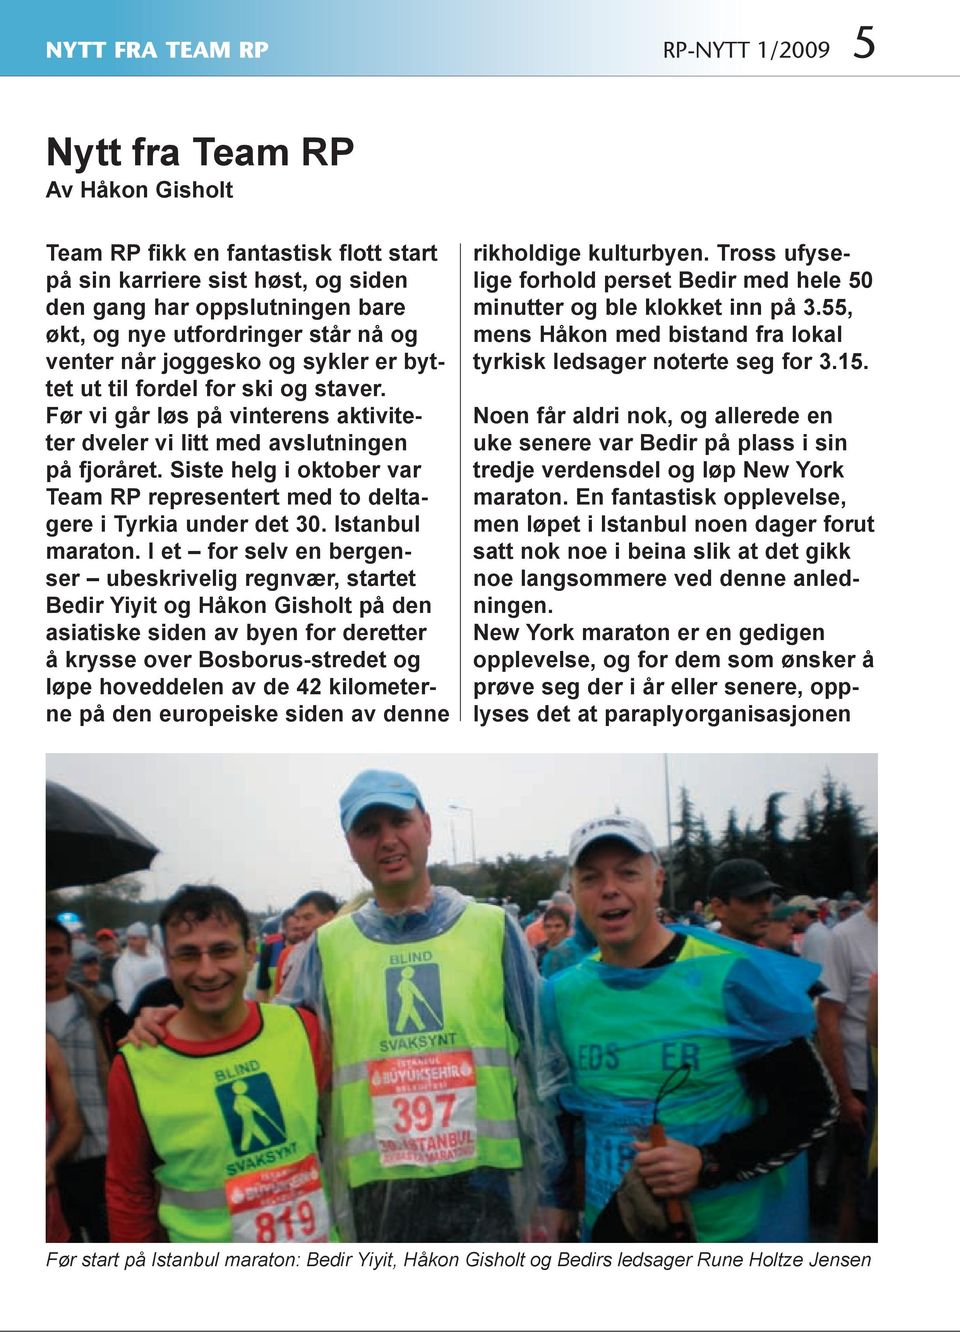 Siste helg i oktober var Team RP representert med to deltagere i Tyrkia under det 30. Istanbul maraton.